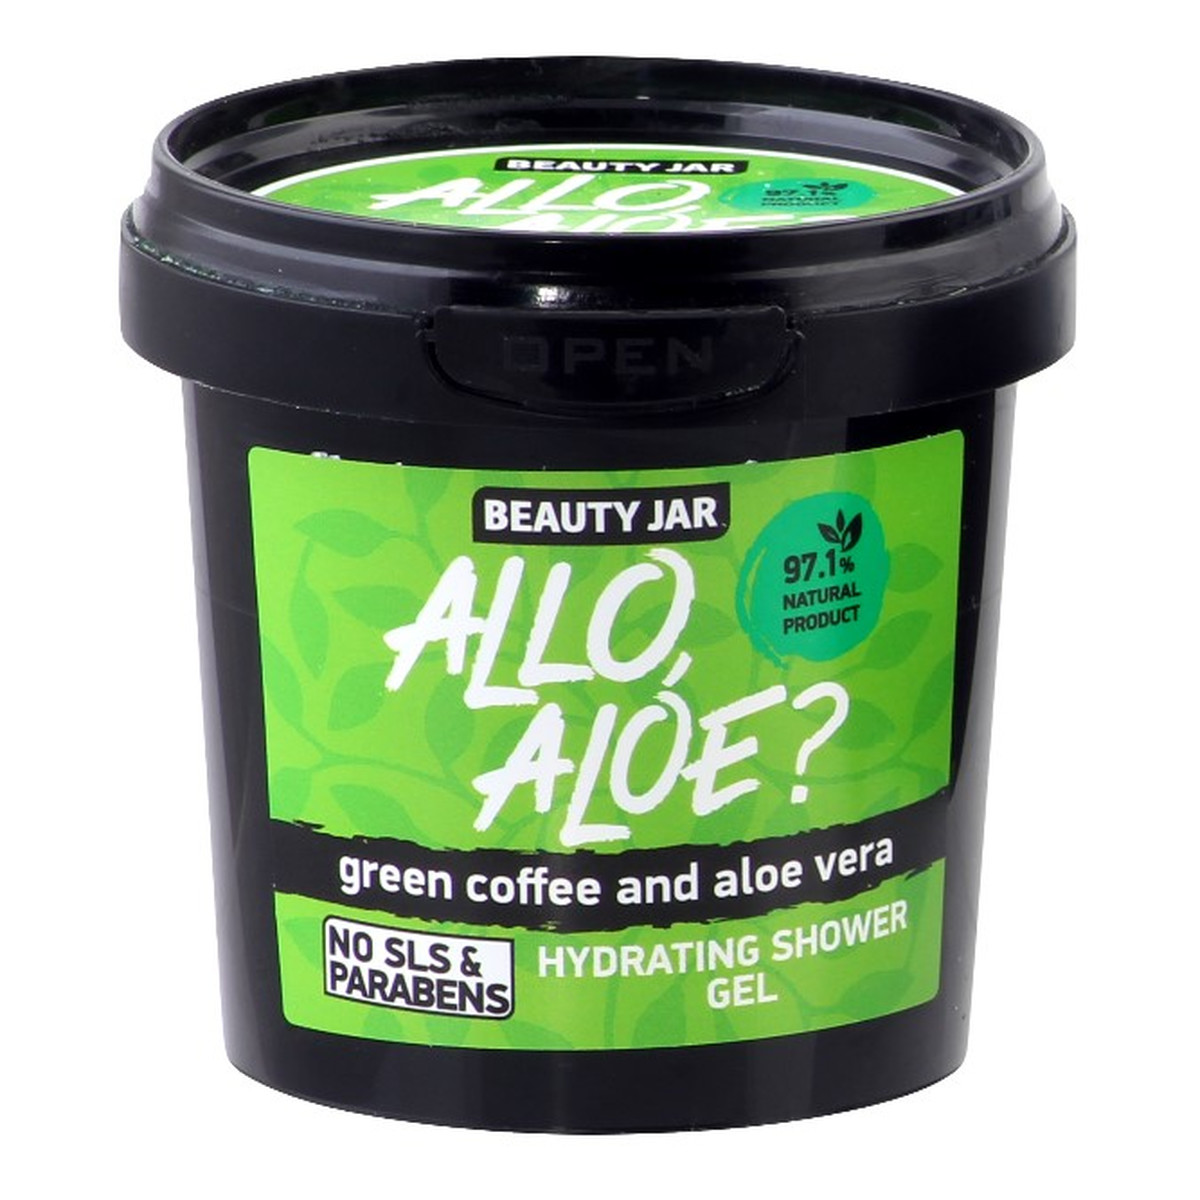 Beauty Jar ALLO ALOE? Nawilżający żel pod prysznic wyciąg z aloesu i zielona kawa 150g